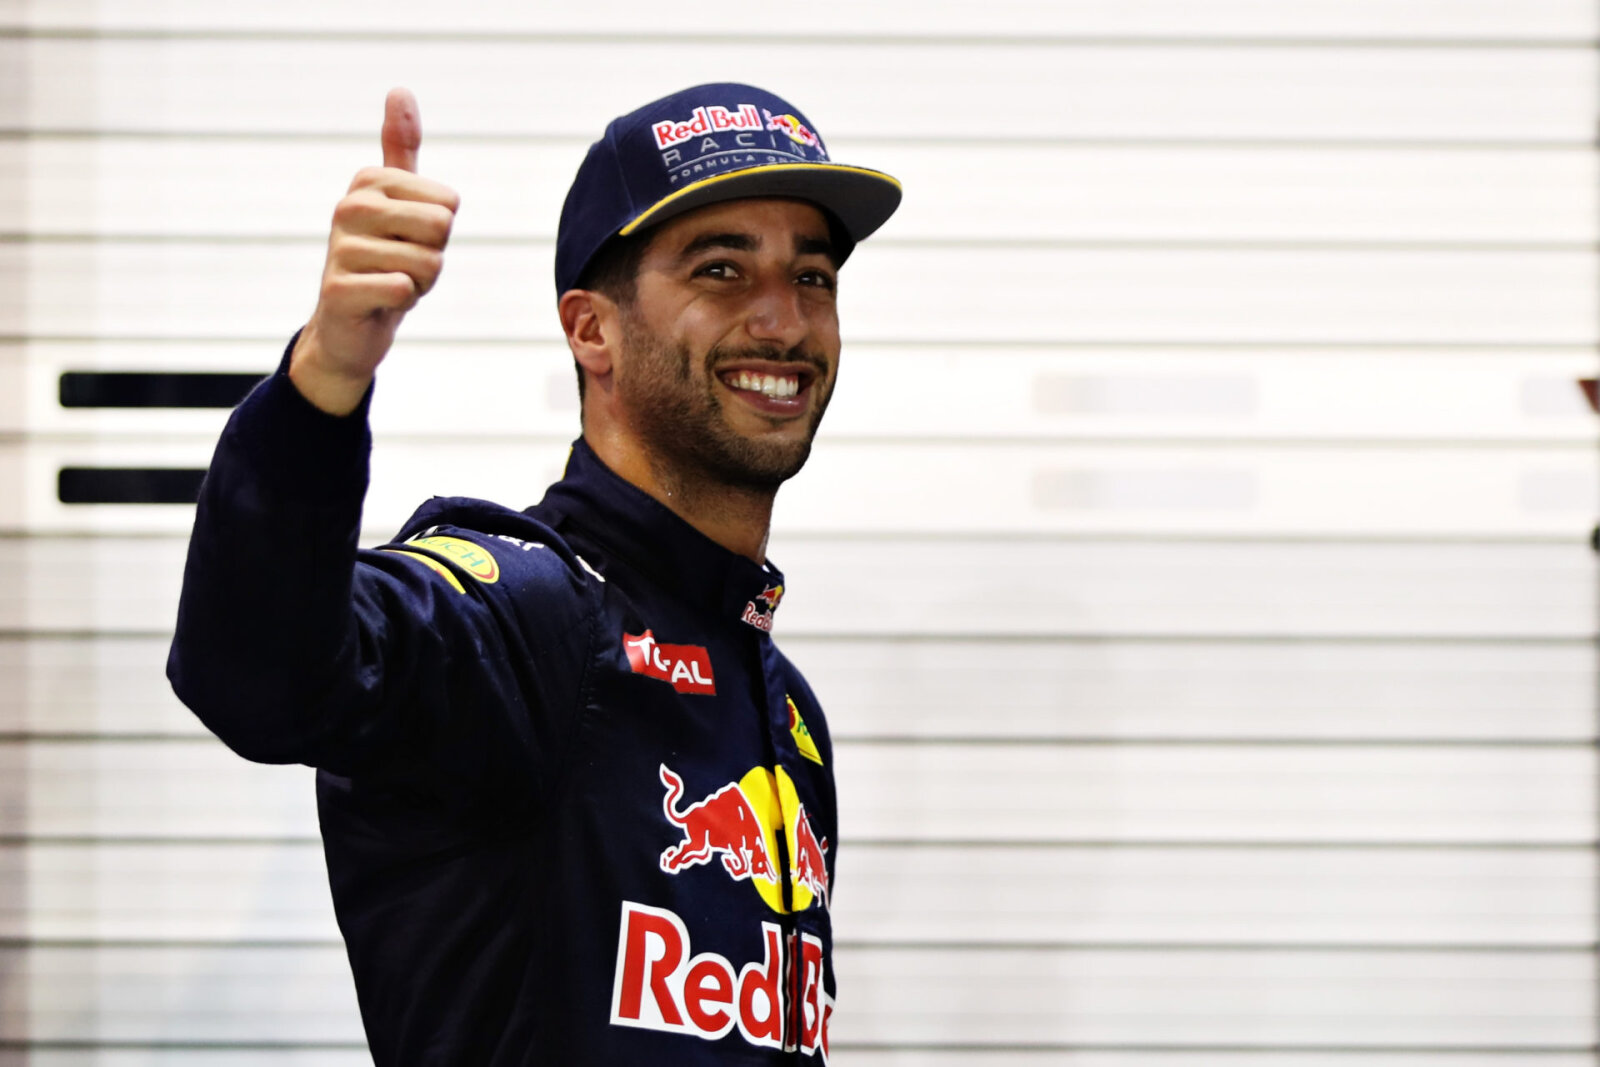 Daniel Ricciardo lors du GP de Singapour